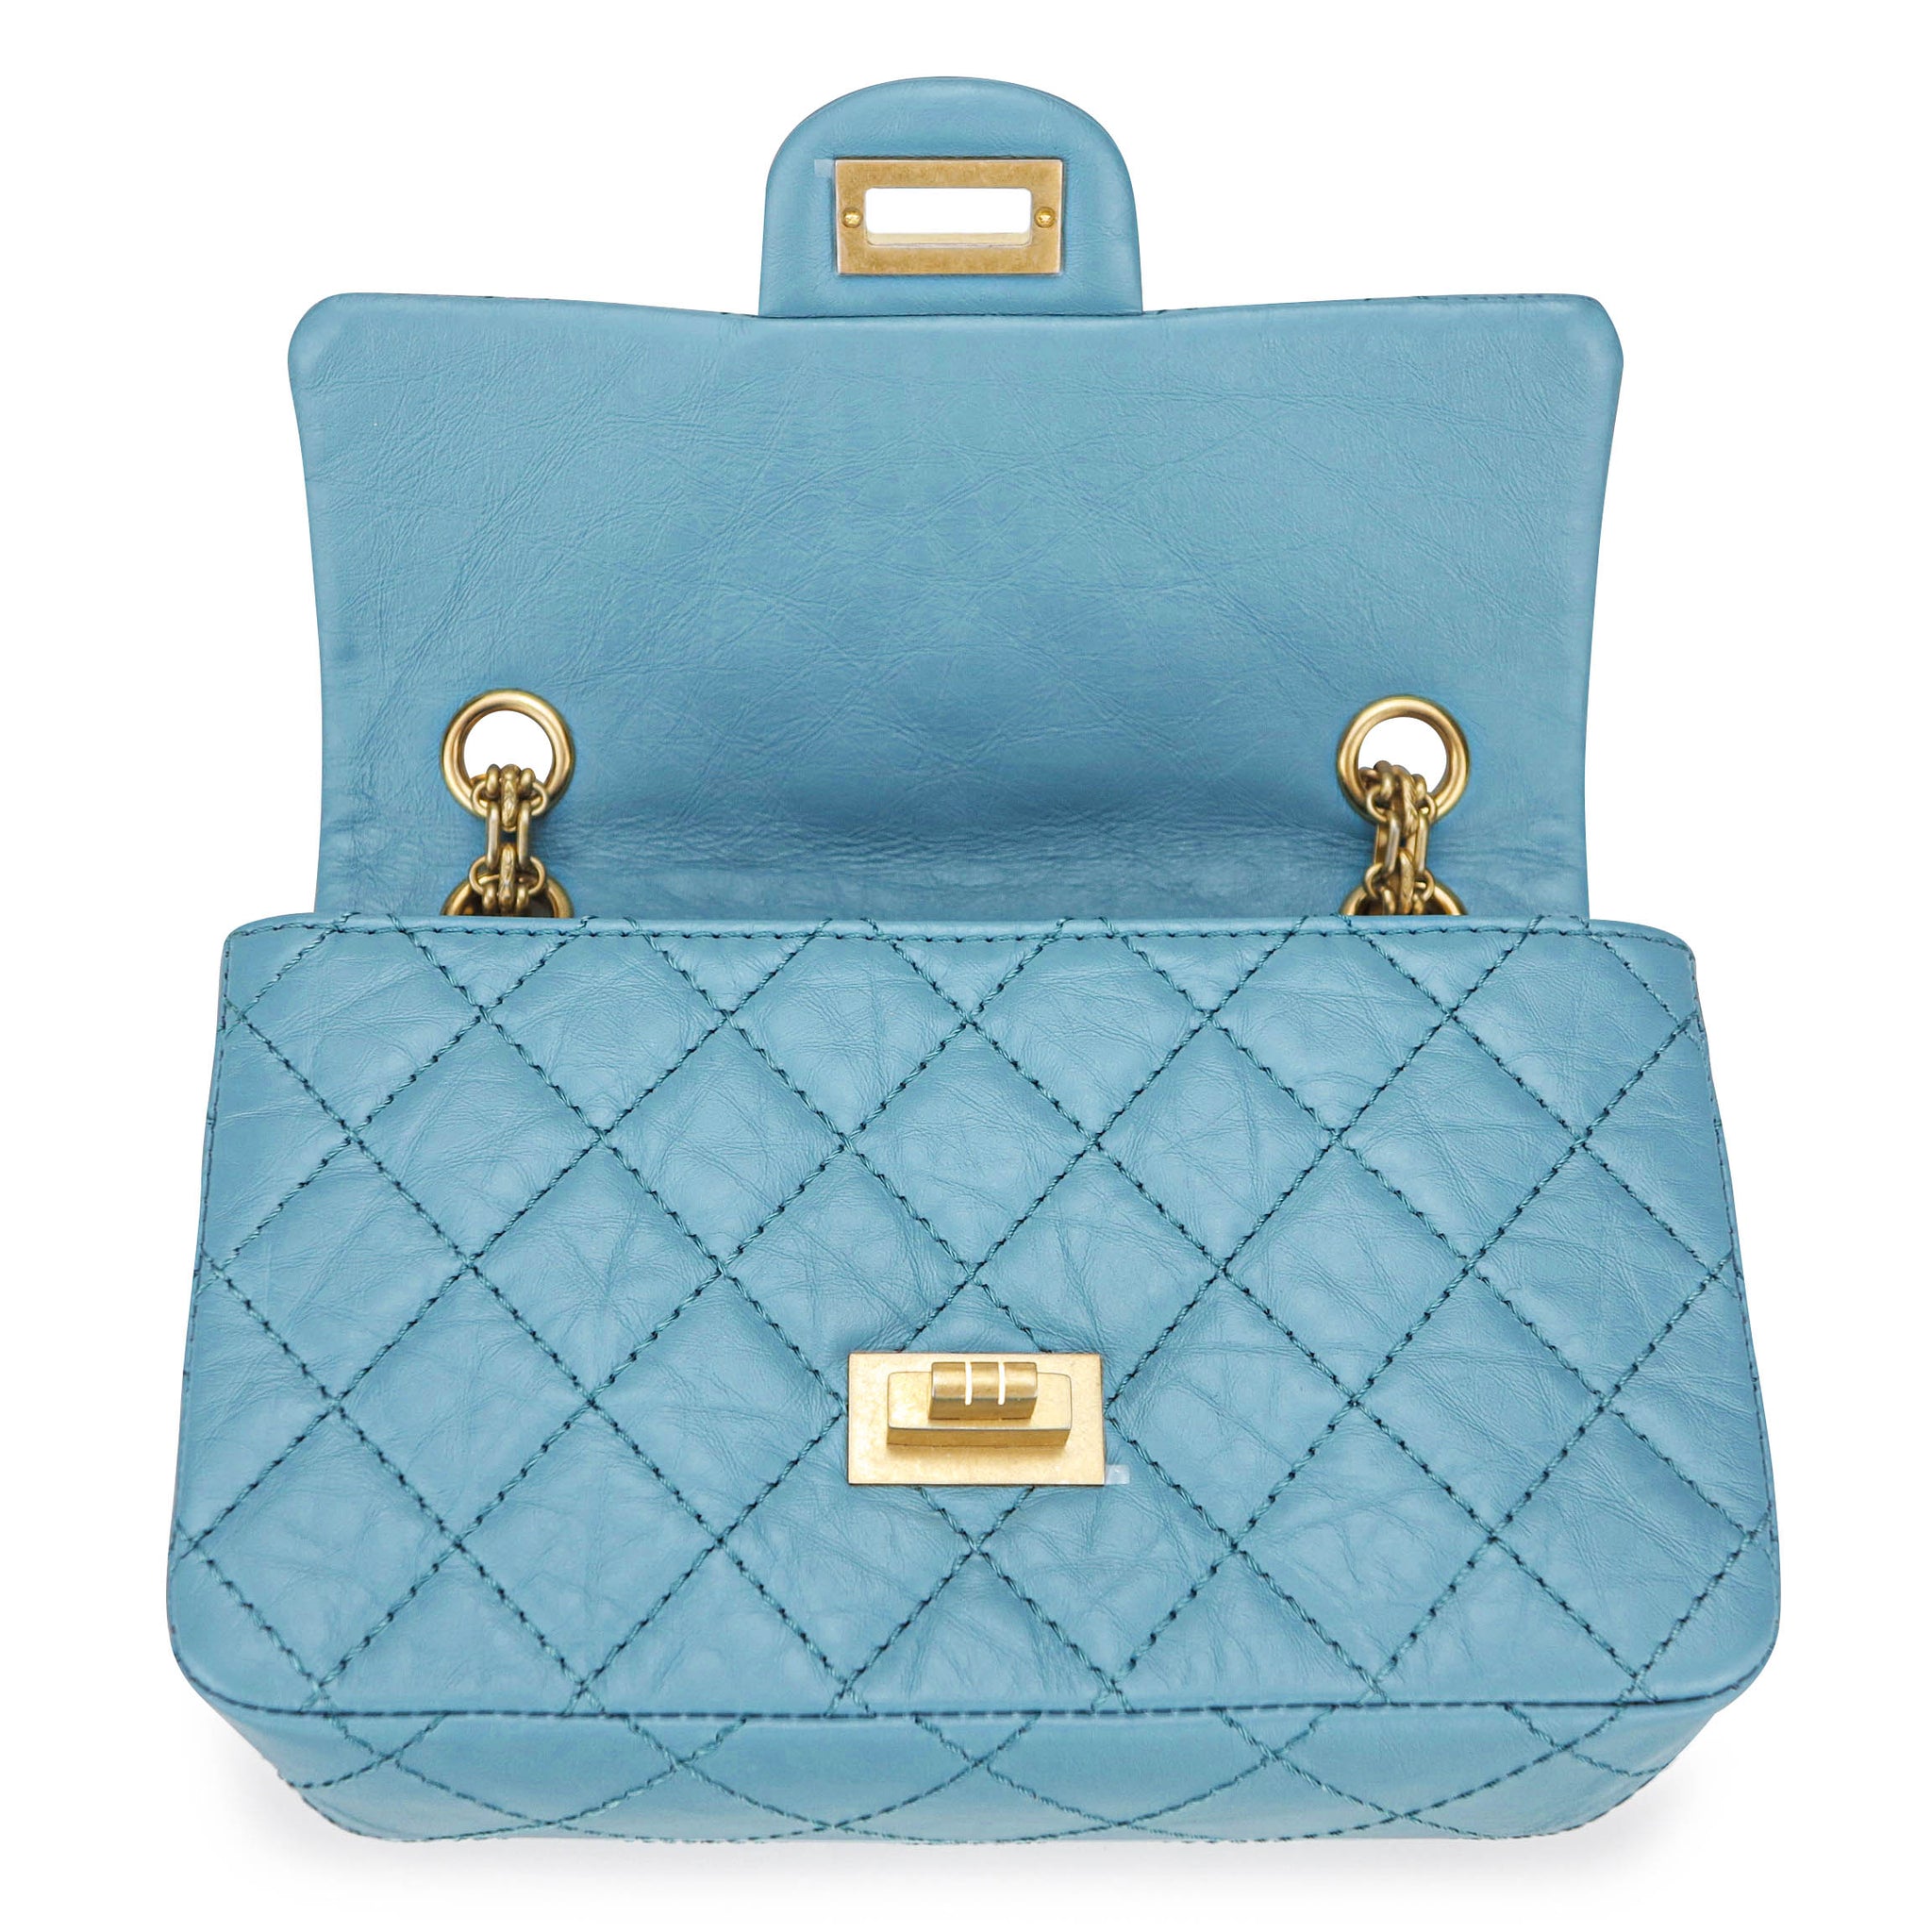 Chanel 2 55 Reissue Flap Bag Size 227 In Blue Aged Calfskin Dearluxe